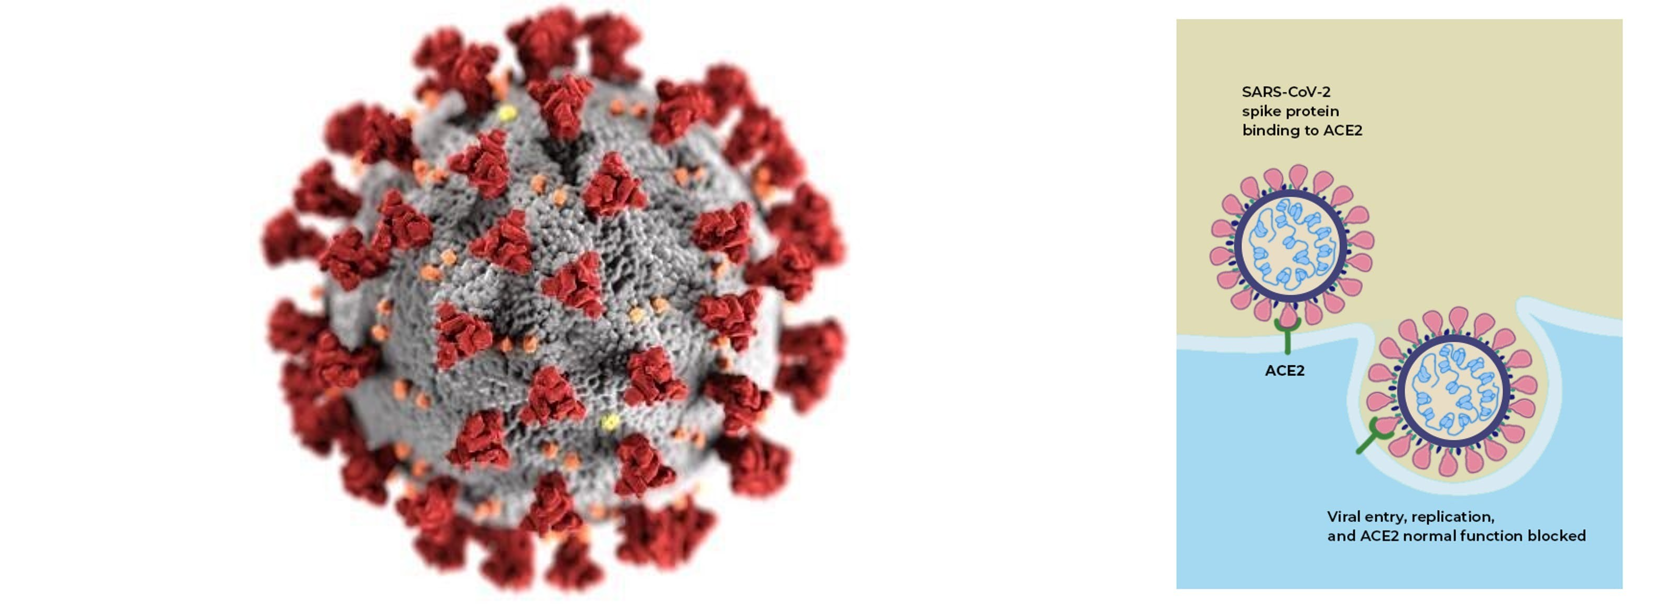 (좌) 코로나바이러스의 모습입니다. 표면에 붉은색으로 표시된 것들이 스파이크 단백질입니다. 출처: CDC/ Alissa Eckert, MSMI; Dan Higgins, MAMS (우) 사람 세포의 ACE2 단백질을 만난 코로나바이러스가 인체로 침입하는 모습입니다.출처: The Conversation, <What is the ACE2 receptor, how is it connected to coronavirus and why might it be key to treating COVID-19? The experts explain>, CC BY-SA